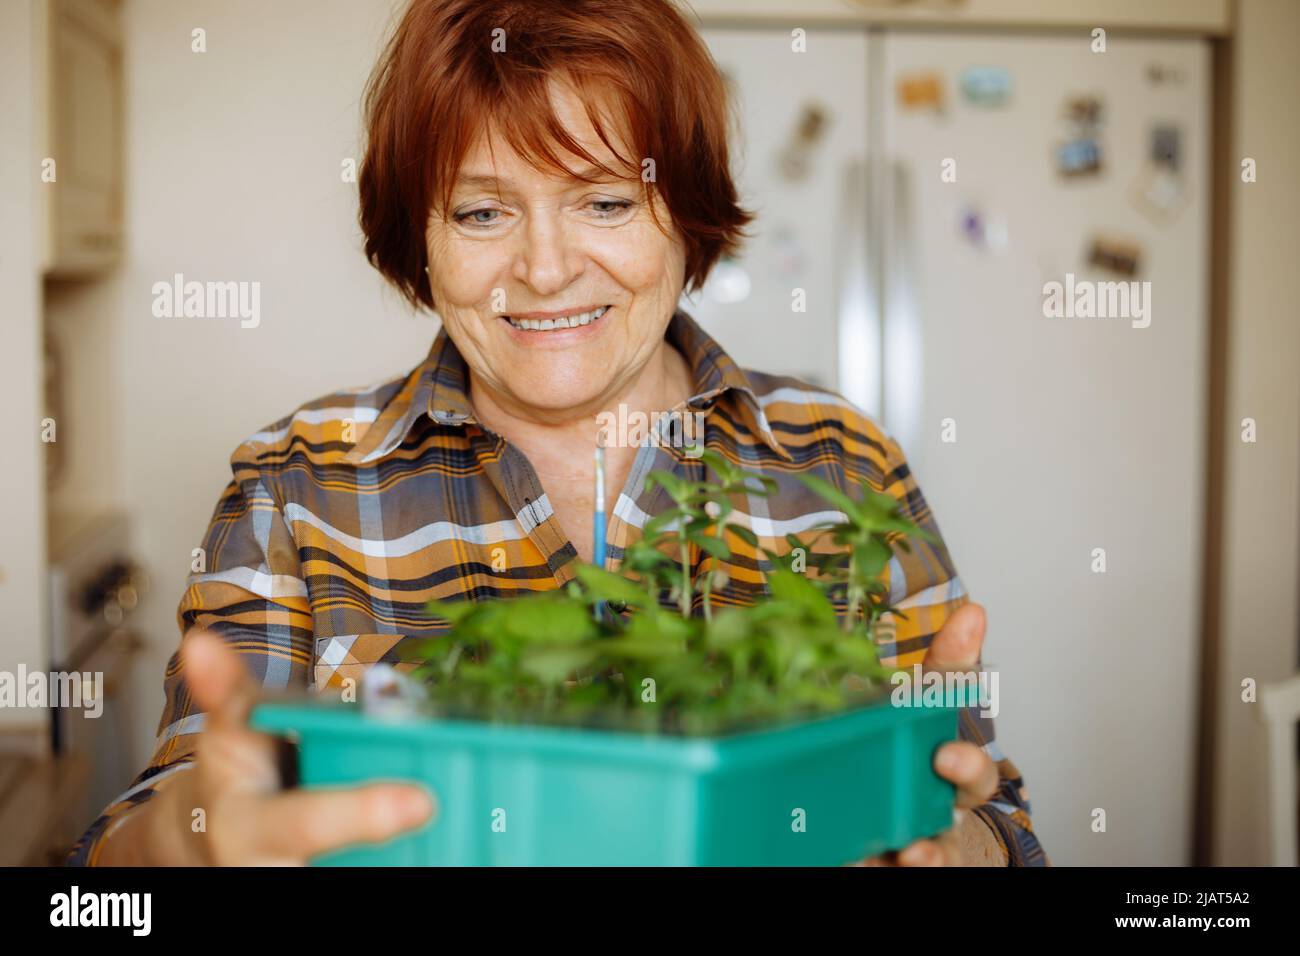 Portrait d'une femme souriante âgée portant une chemise à carreaux, debout dans la cuisine, tenant une boîte avec une plantule verte en pleine croissance. Banque D'Images